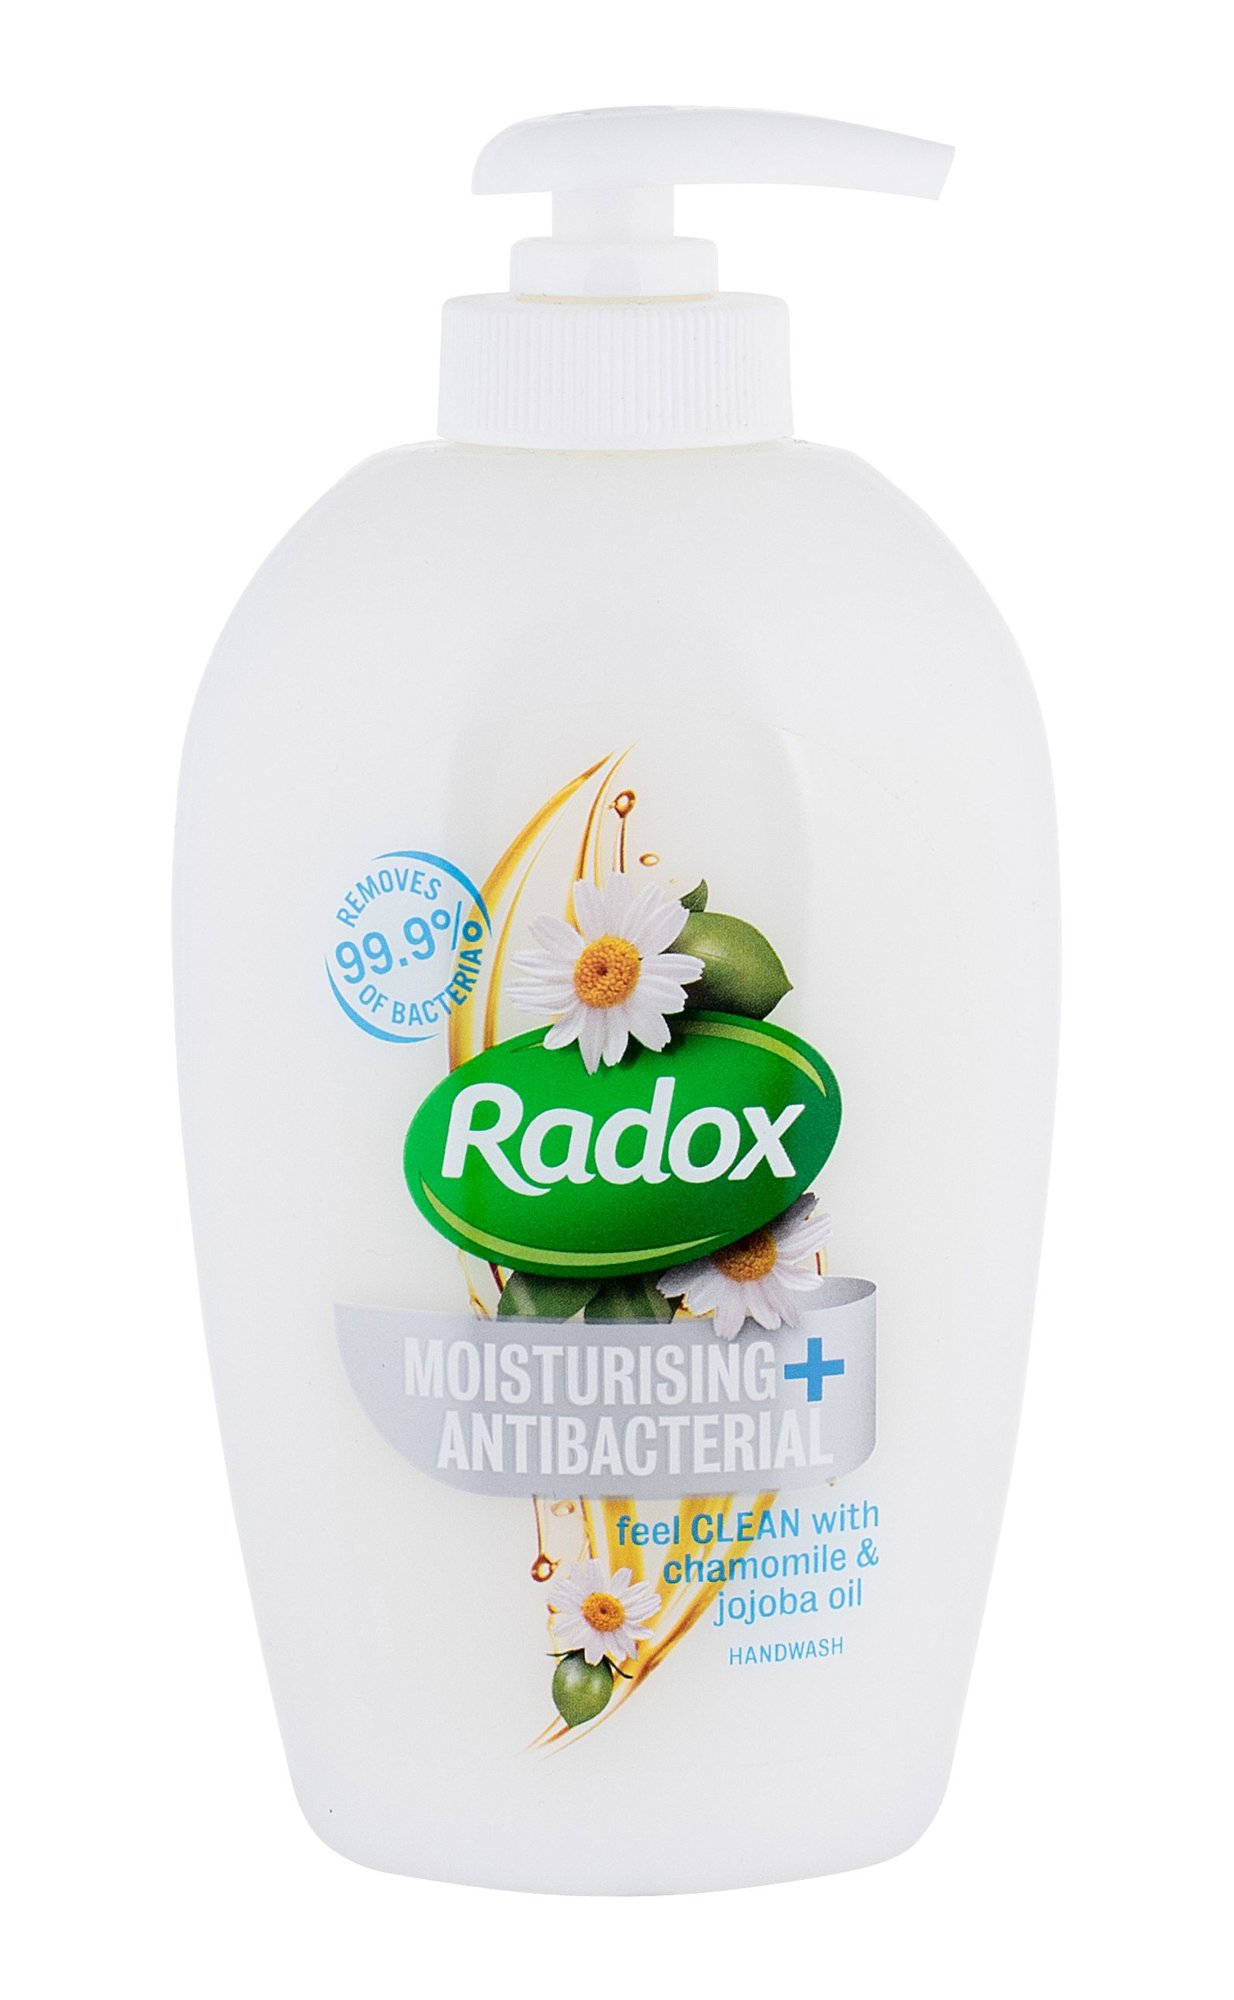 Radox Moisturising + Antibacterial Handwash Chamomile